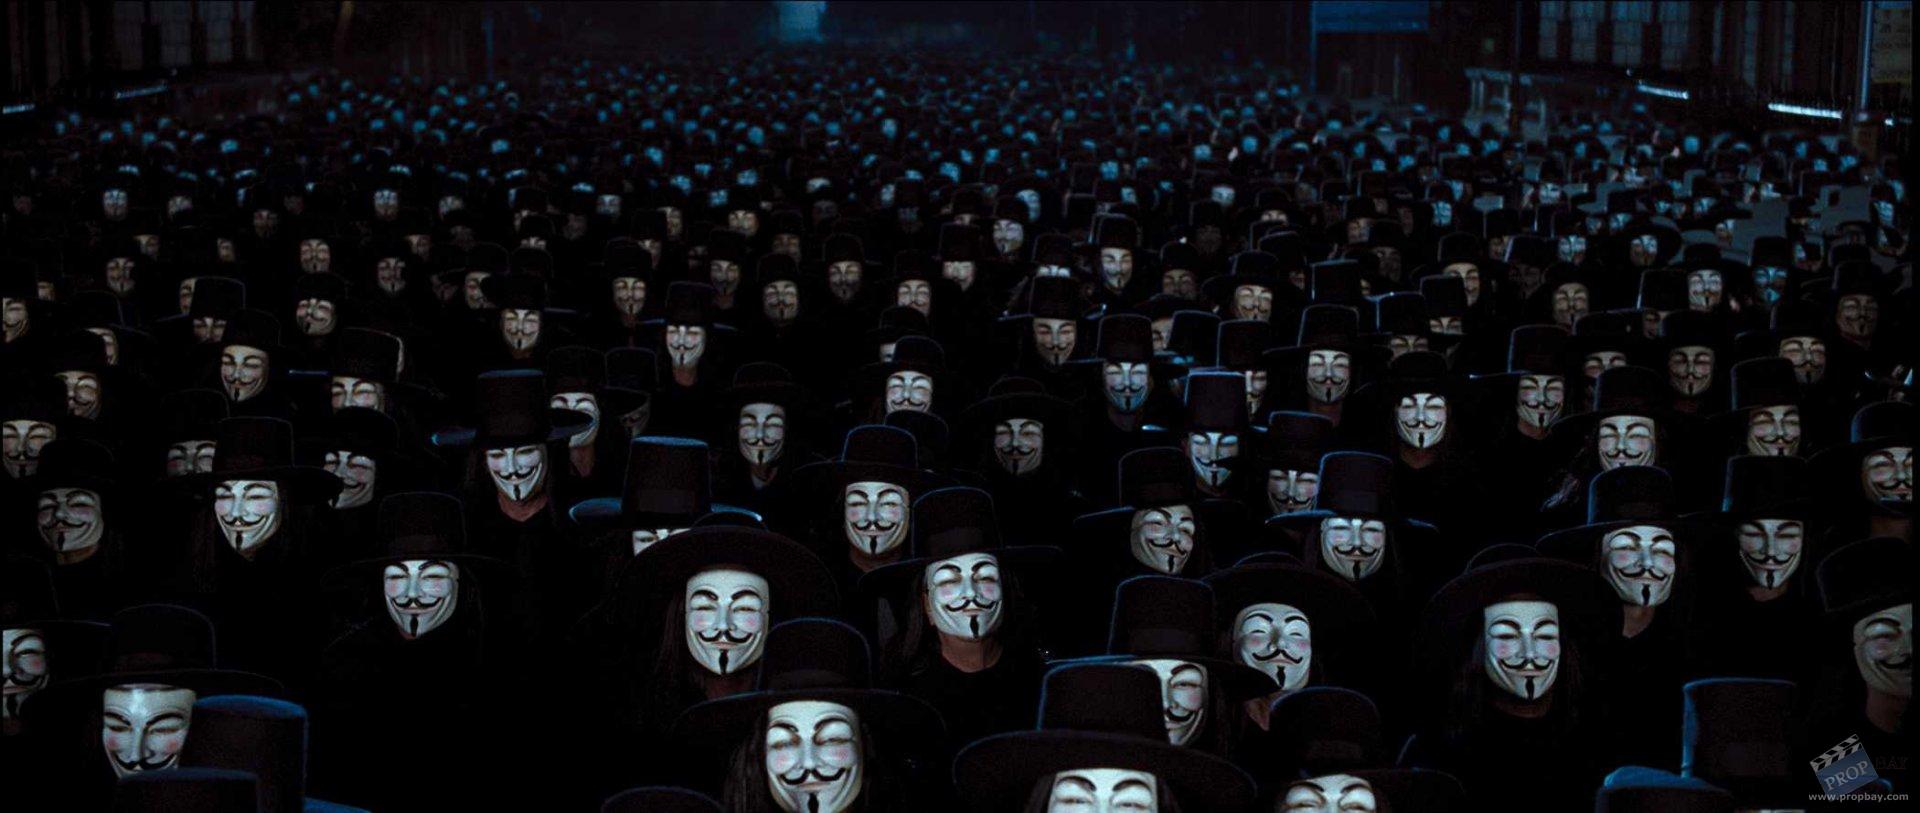 V for Vendetta masks